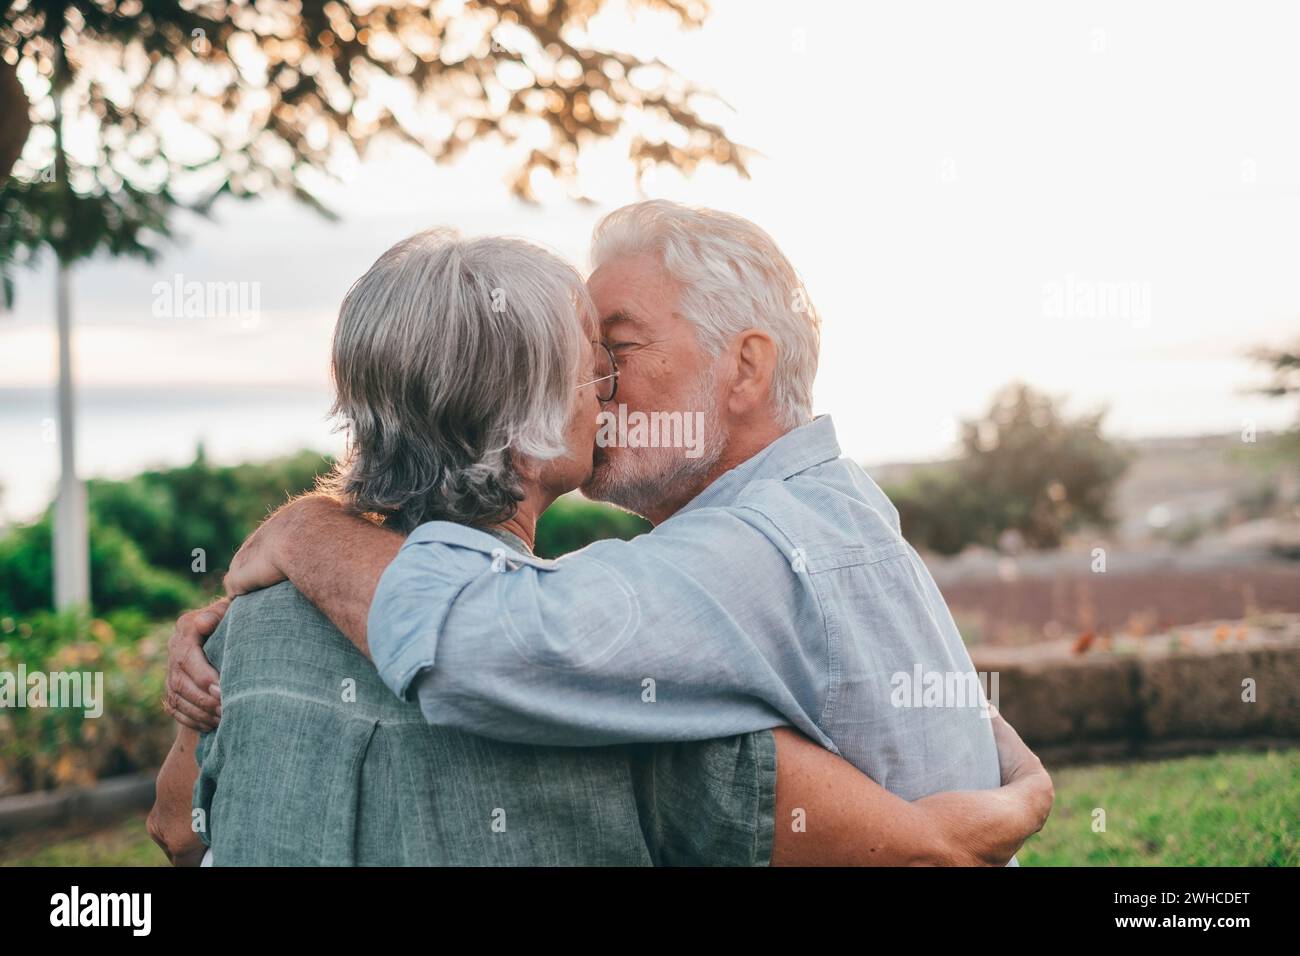 Kopfaufnahme Nahaufnahme Porträt glückliche grauhaarige Frau mittleren Alters, die sich an einen lächelnden älteren Ehemann kuschelt und einen zarten Moment im Park genießt. Ein liebevolles, altes Familienpaar, das den Sonnenuntergang umschließt. Stockfoto